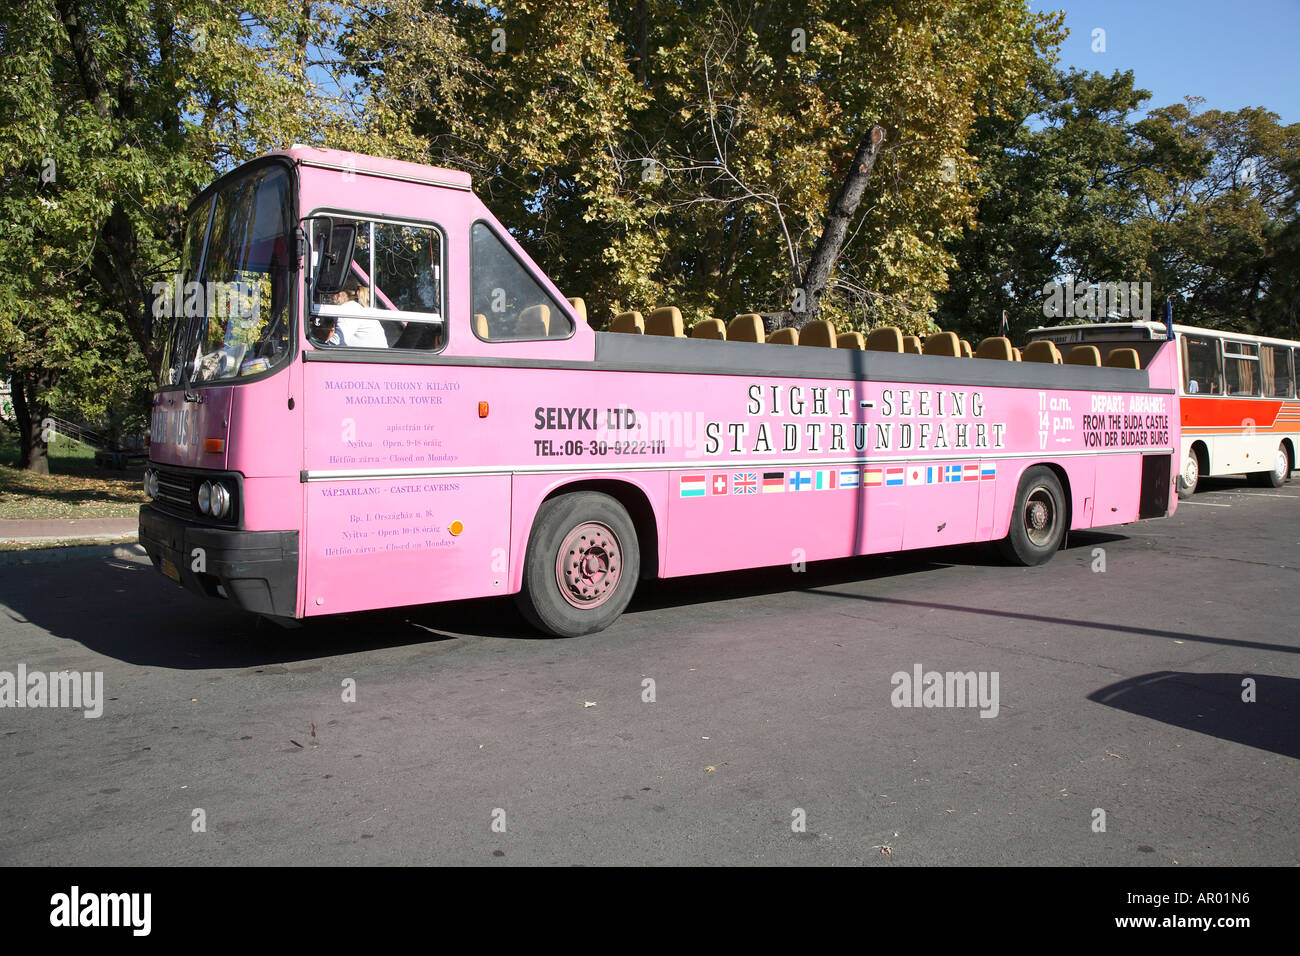 Stadtrundfahrt mit dem Cabrio-Bus, Budapest, Ungarn Stockfotografie - Alamy